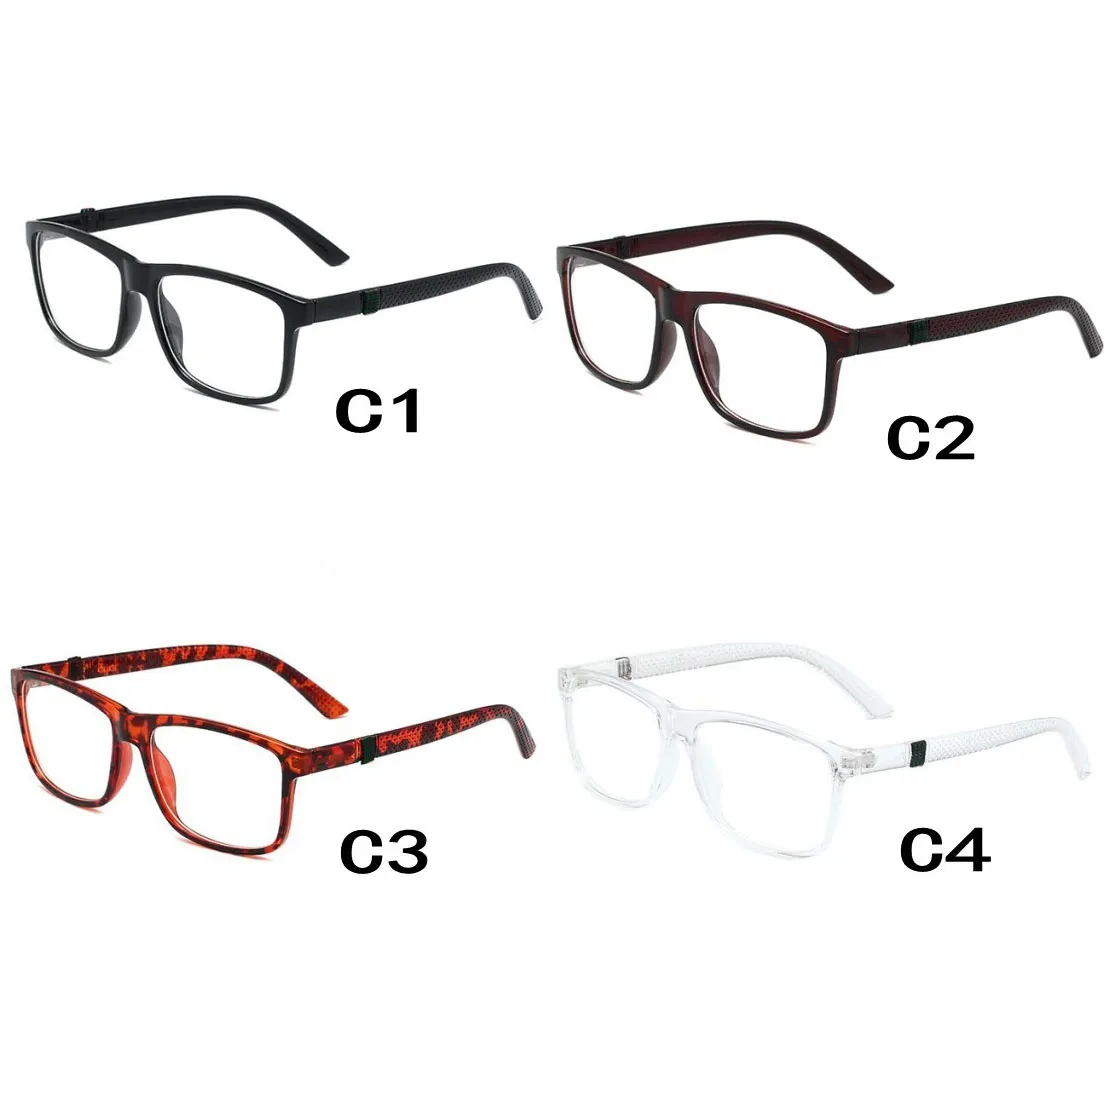 النظارات الشمسية البصرية في الولايات المتحدة الأمريكية تصميم الأزياء الأوروبية مكبرة للجنسين نظارات الشمس العالمية واضح عدسات شفافة 4 ألوان لطيفة مربع الإطار خمر النظارات